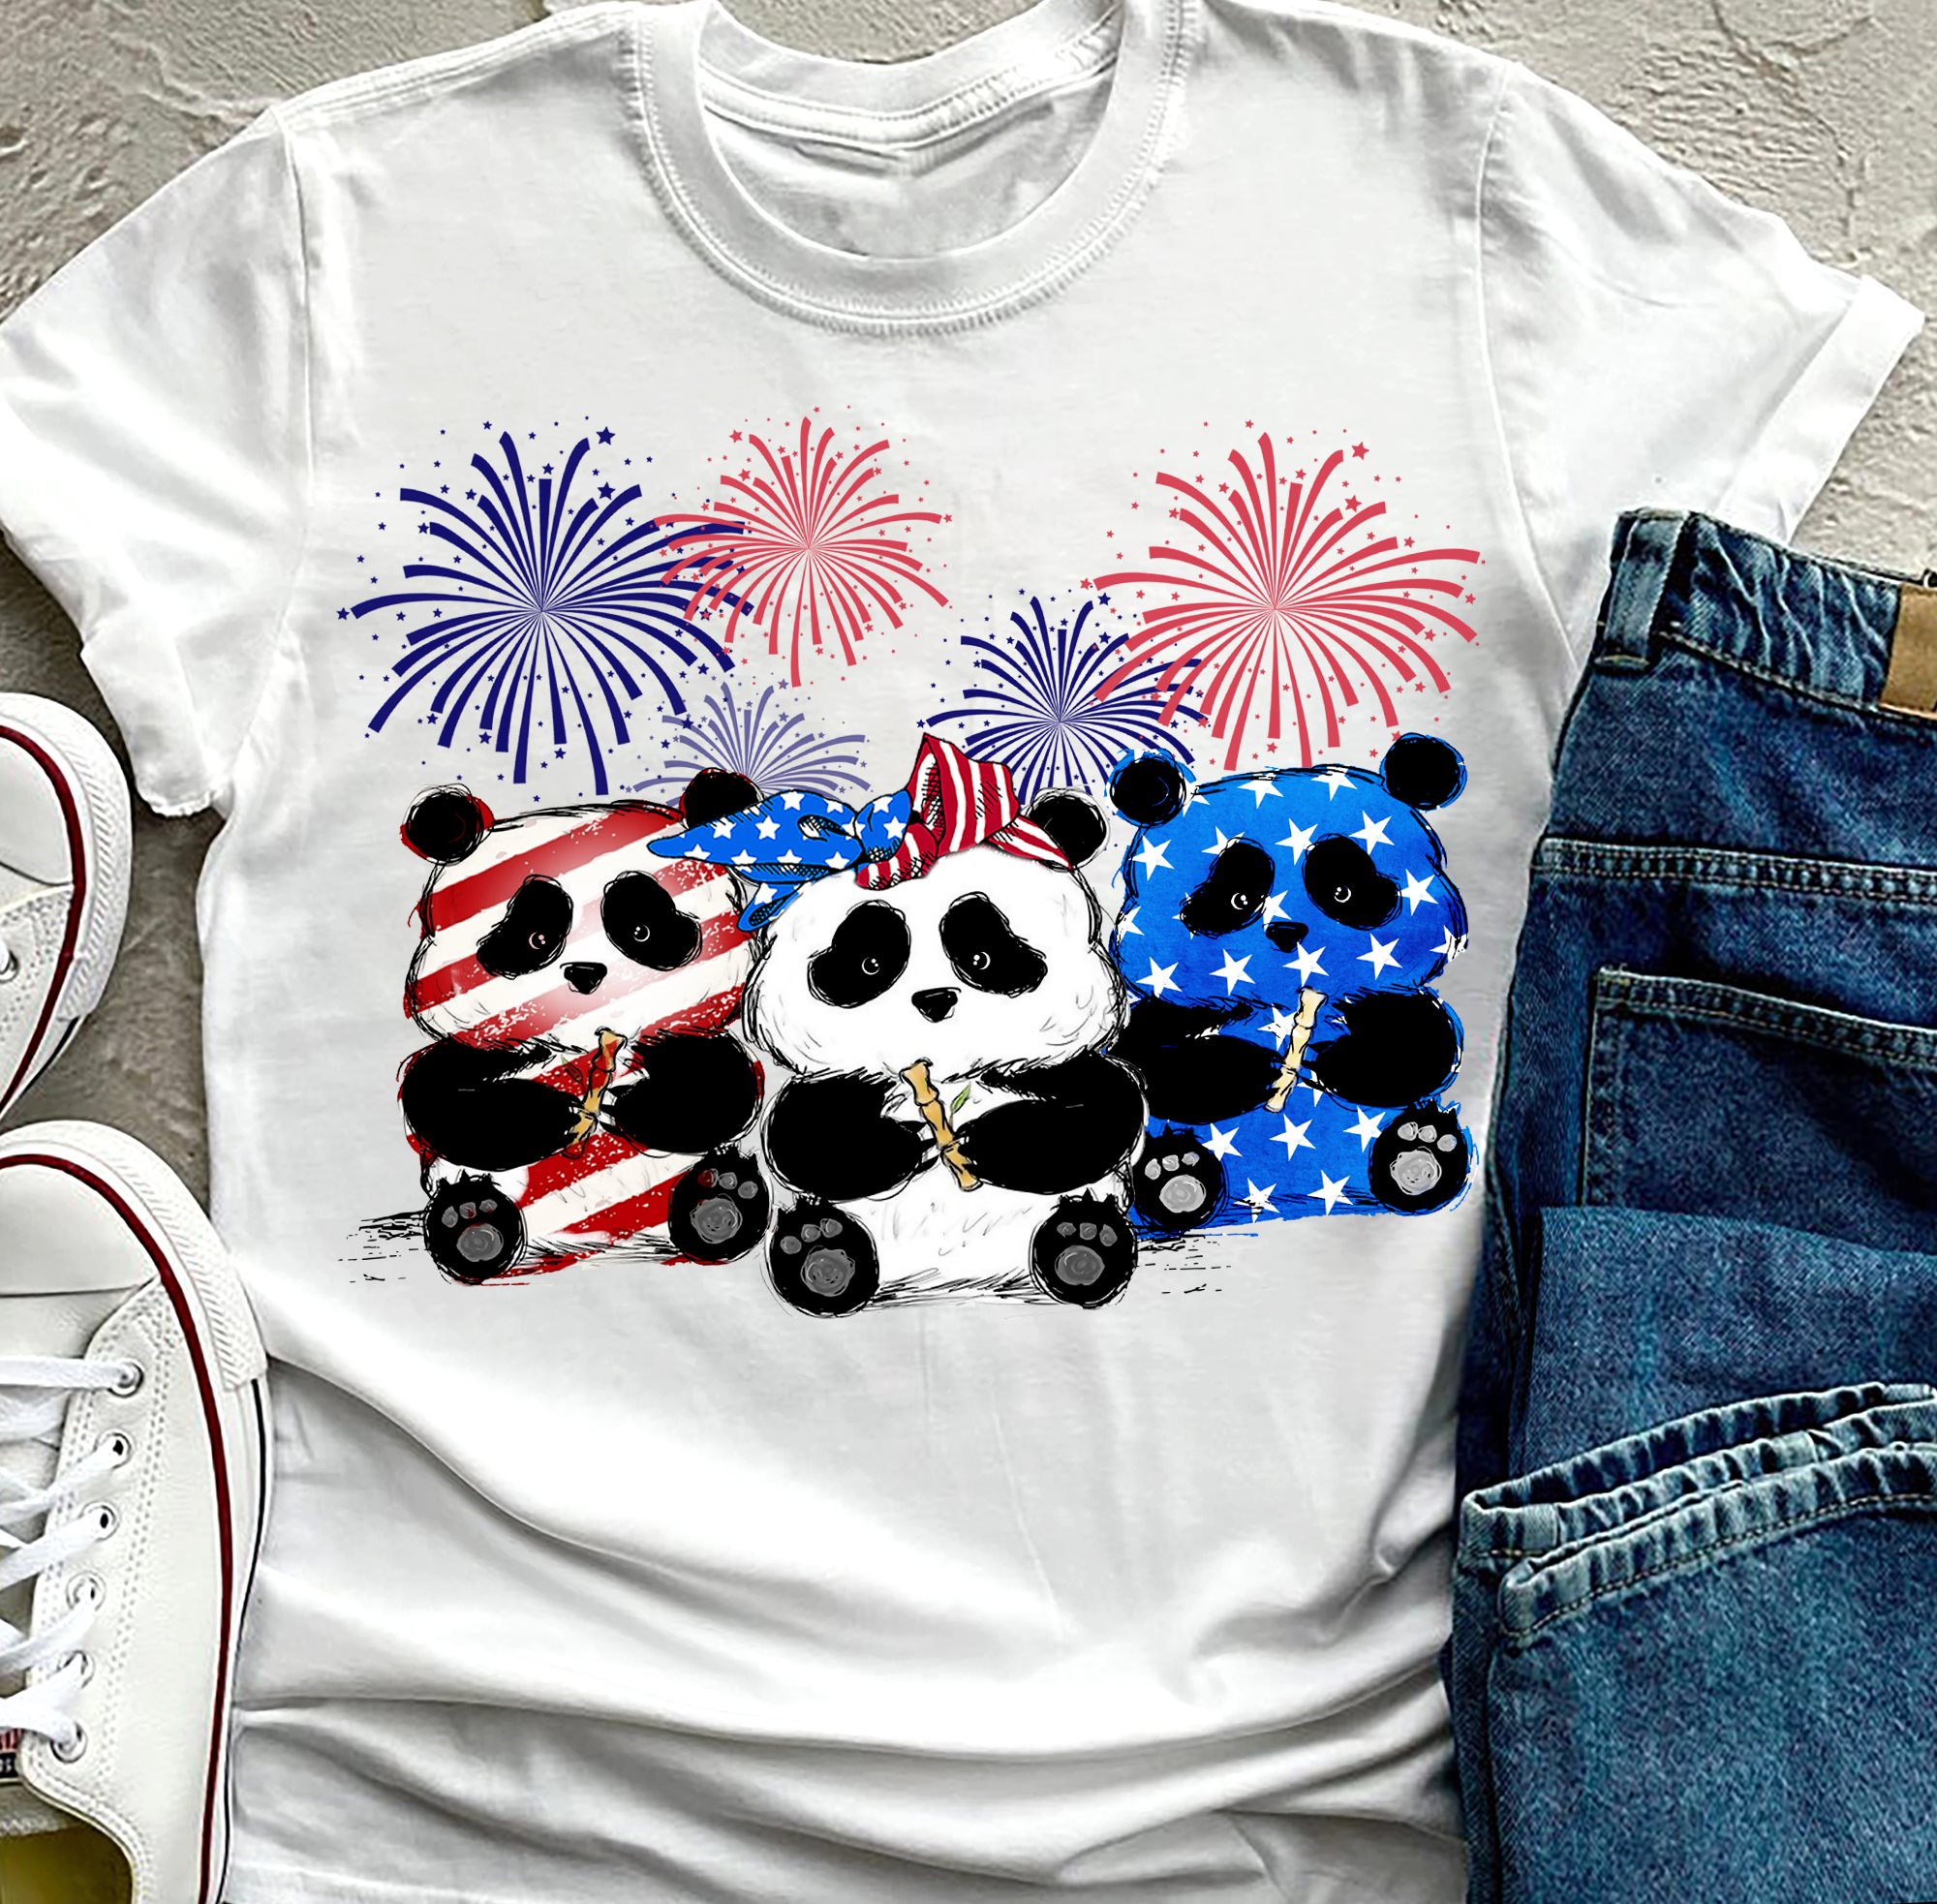 America flag and panda - Panda lover